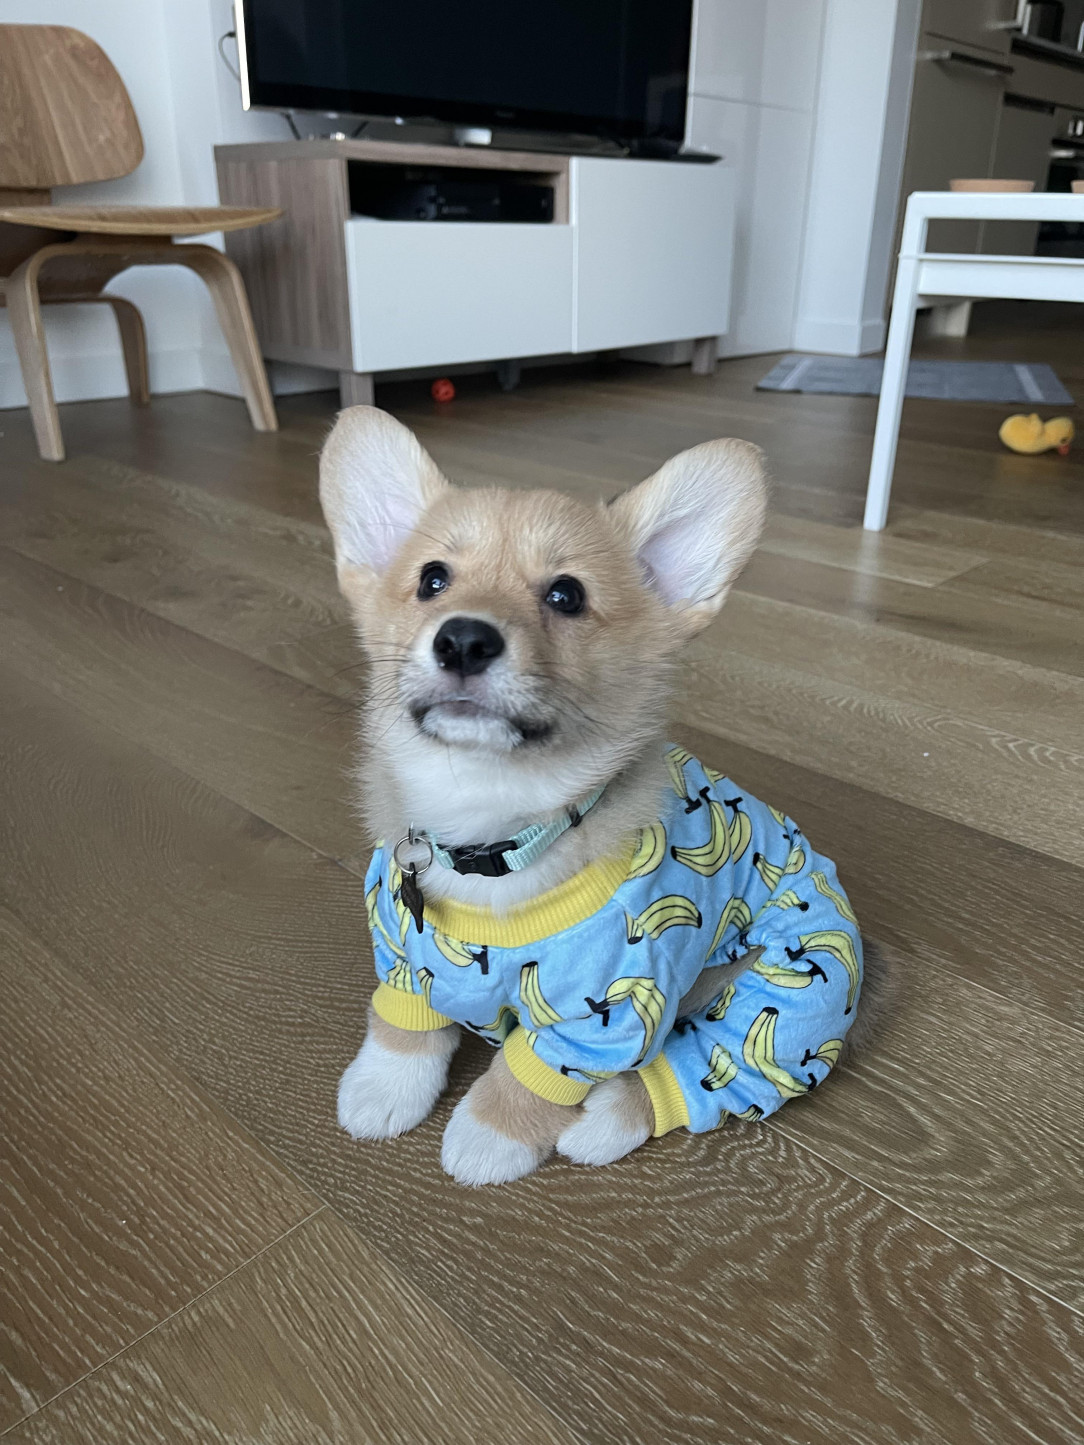 Darwin loves his banana pajamas